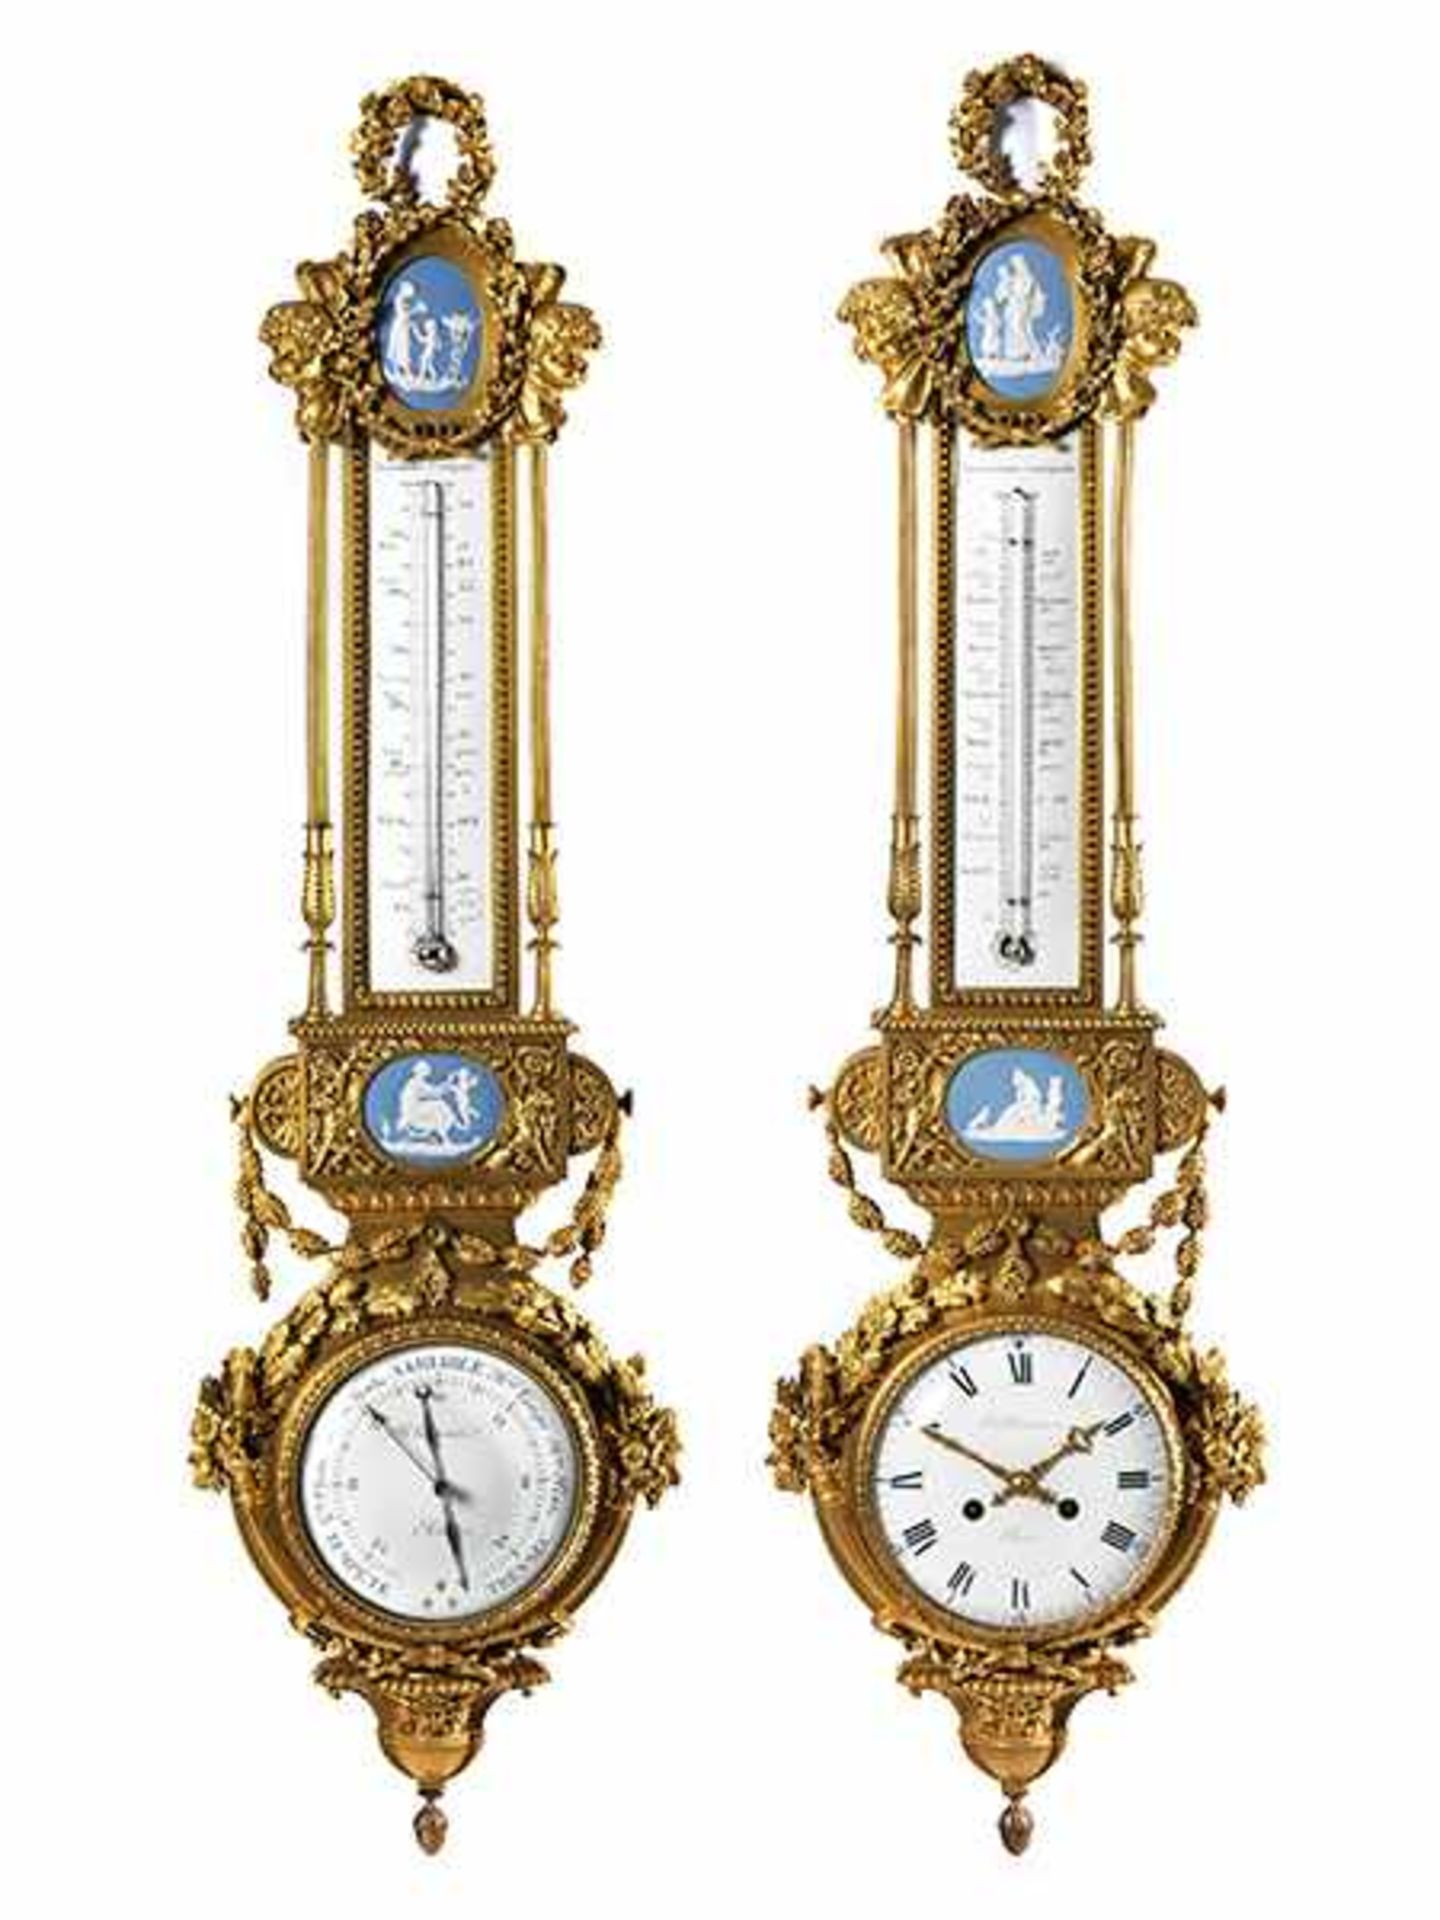 Prächtiges Paar Instrumentarien: Barometer mit Thermometer und Uhr mit Thermometer Höhe: je ca. 91